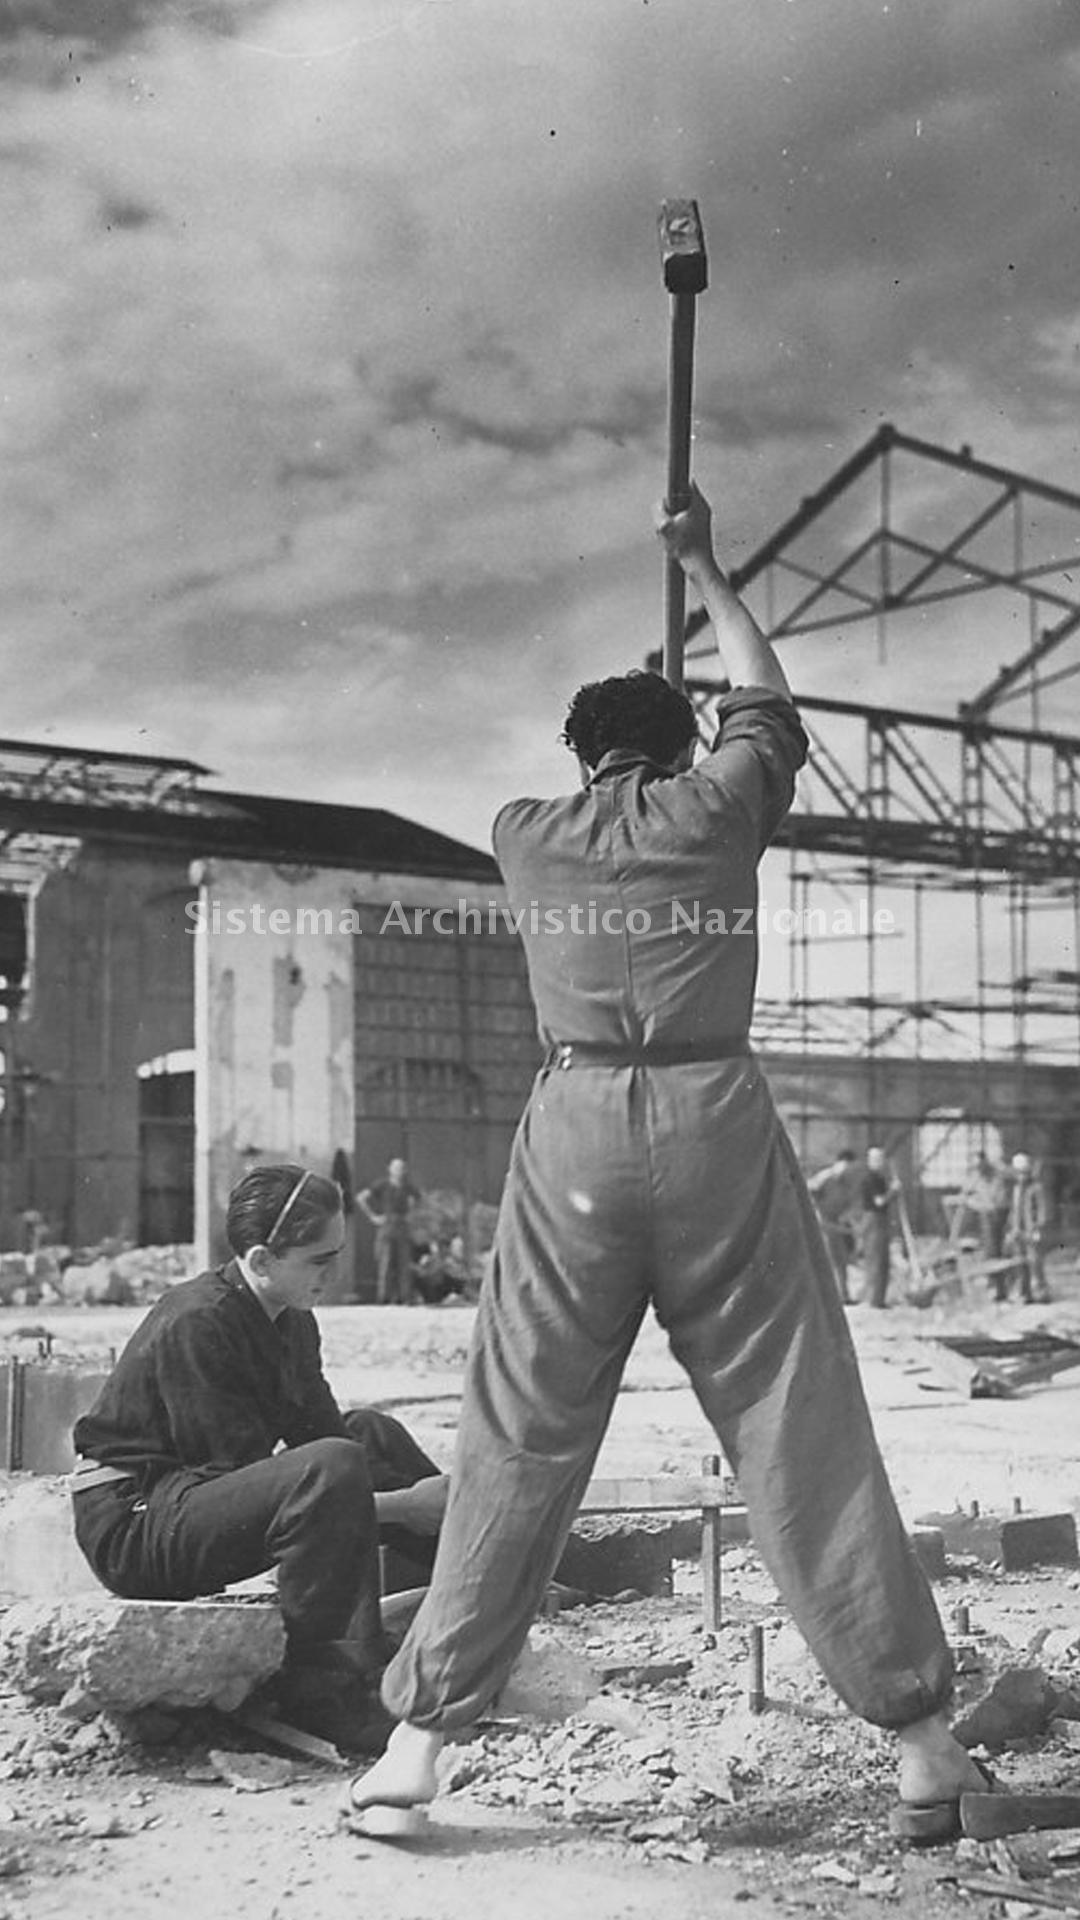   Ricostruzione dello stabilimento V sezione Aeronautica Breda al termine della Seconda Guerra mondiale, Sesto San Giovanni (MI), 1945-1946 (Fondazione Isec, fondo Breda).
